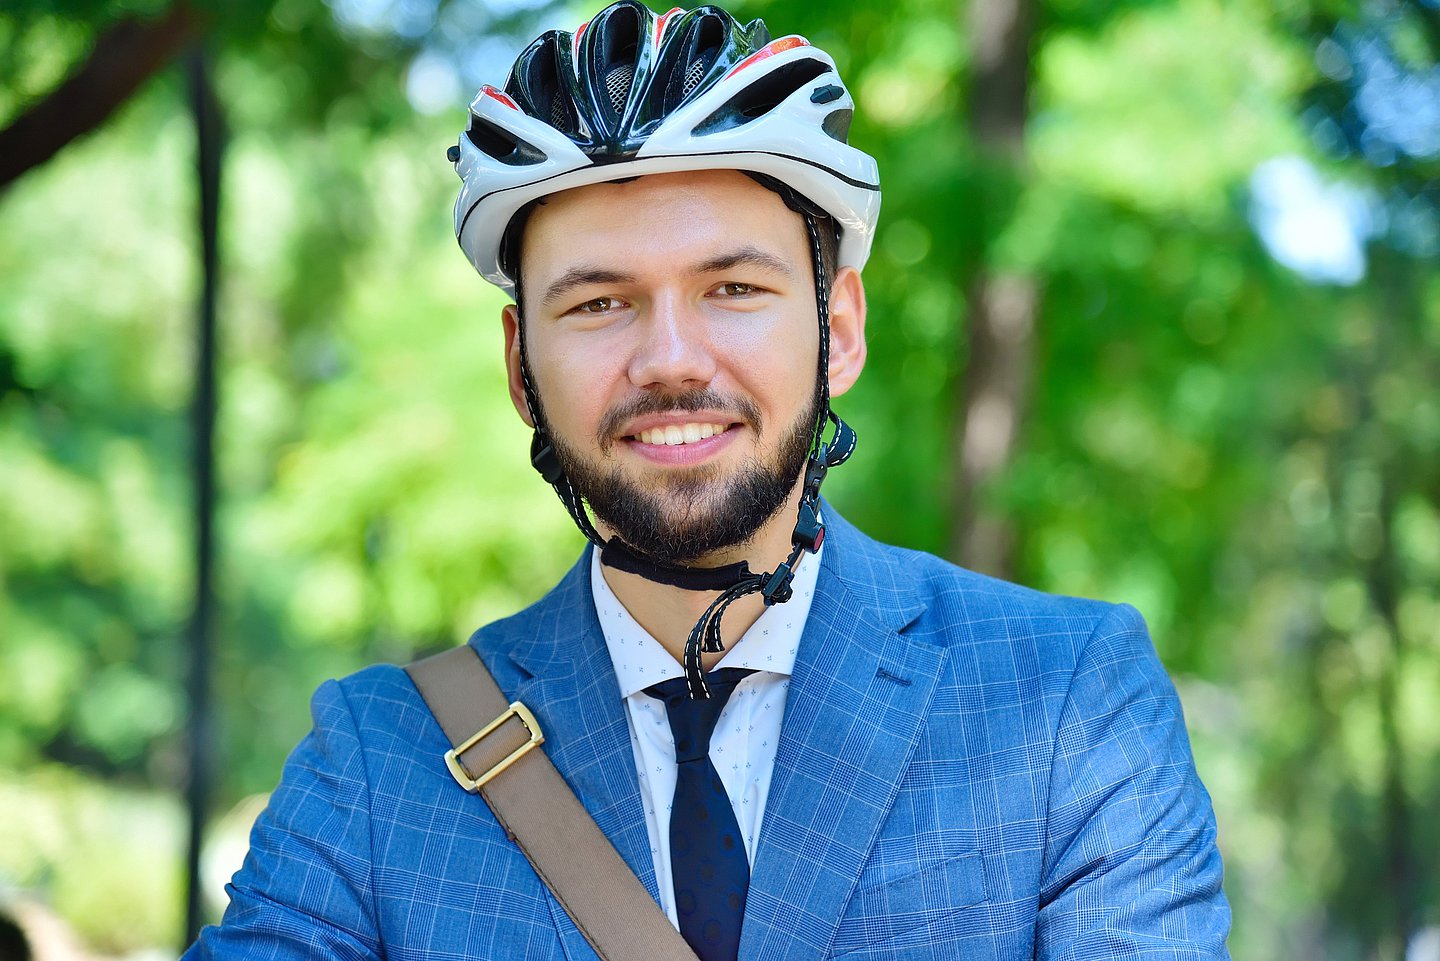 Foto zeigt einen jungen Mann in einem blauen Anzug, darunter Schlips und Hemd, der einen Fahrradhelm trägt und fahrbereit aussieht. Im Hintergrund ist Wald zu erkennen..